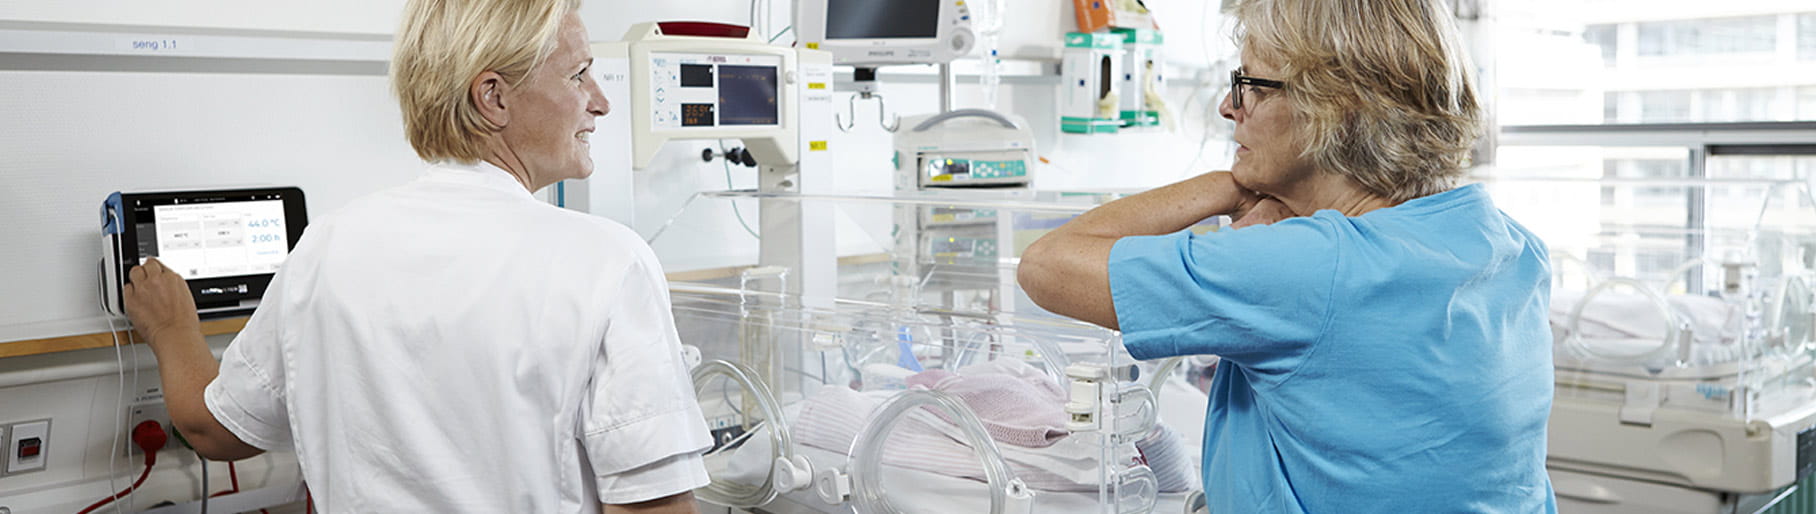 Ситуация в больнице: две медсестры из отделения интенсивной терапии новорожденных используют чрескожный монитор Radiometer